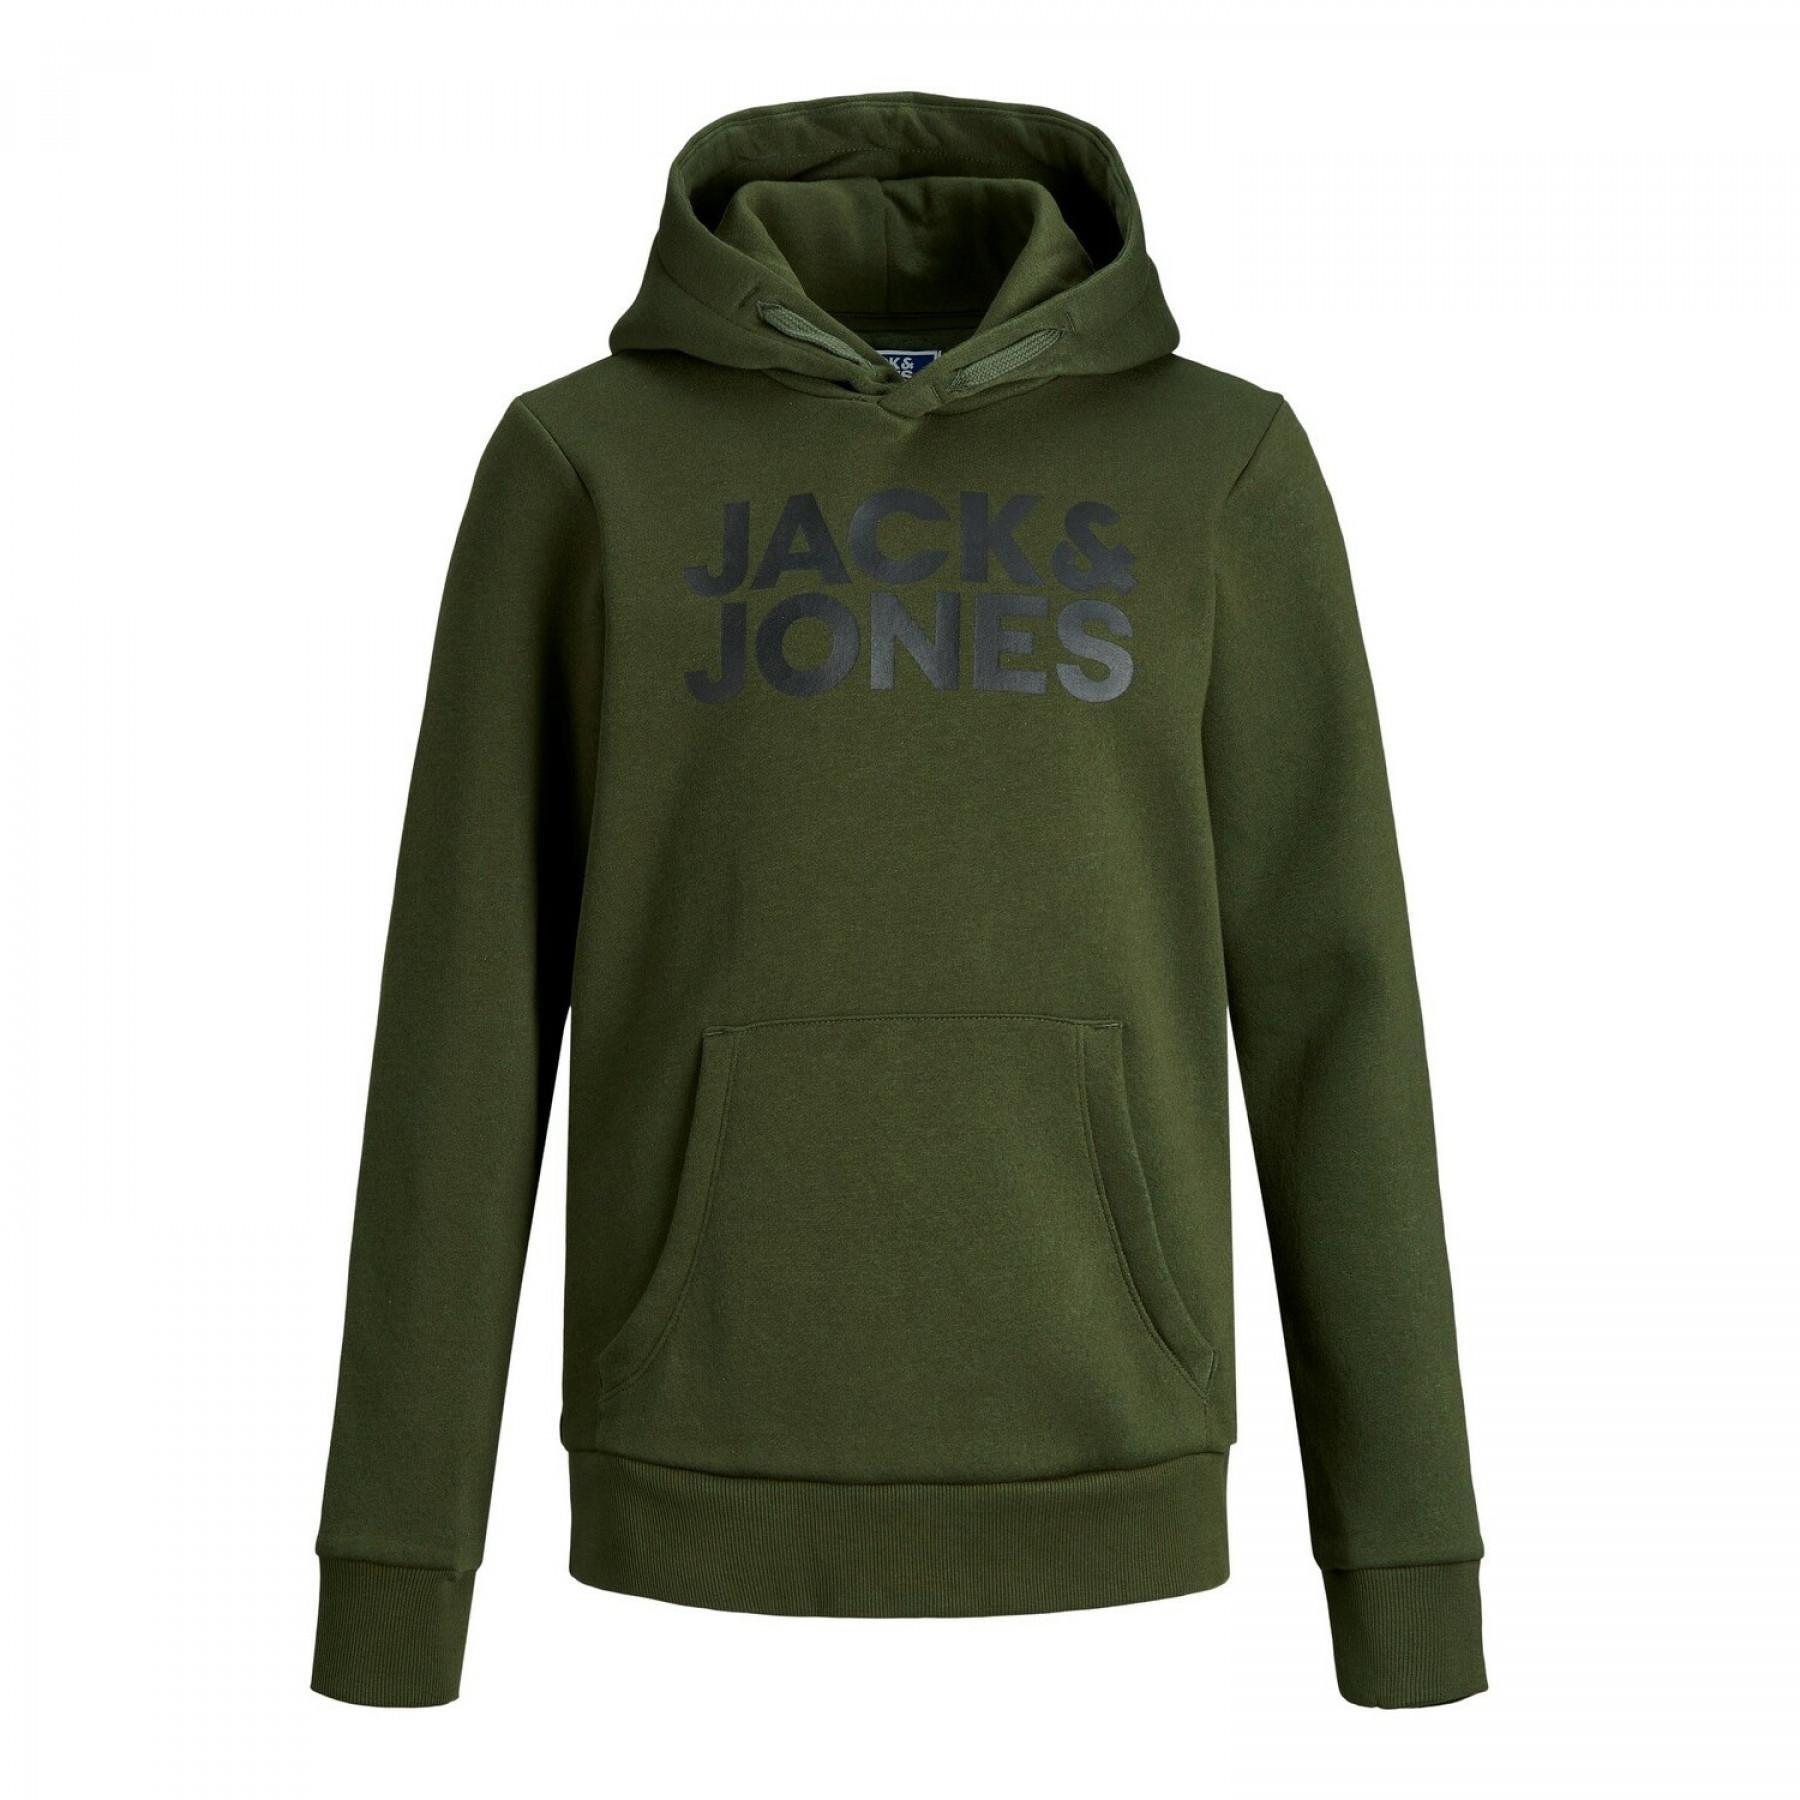 Sudadera con capucha para niños Jack & Jones Corp Logo